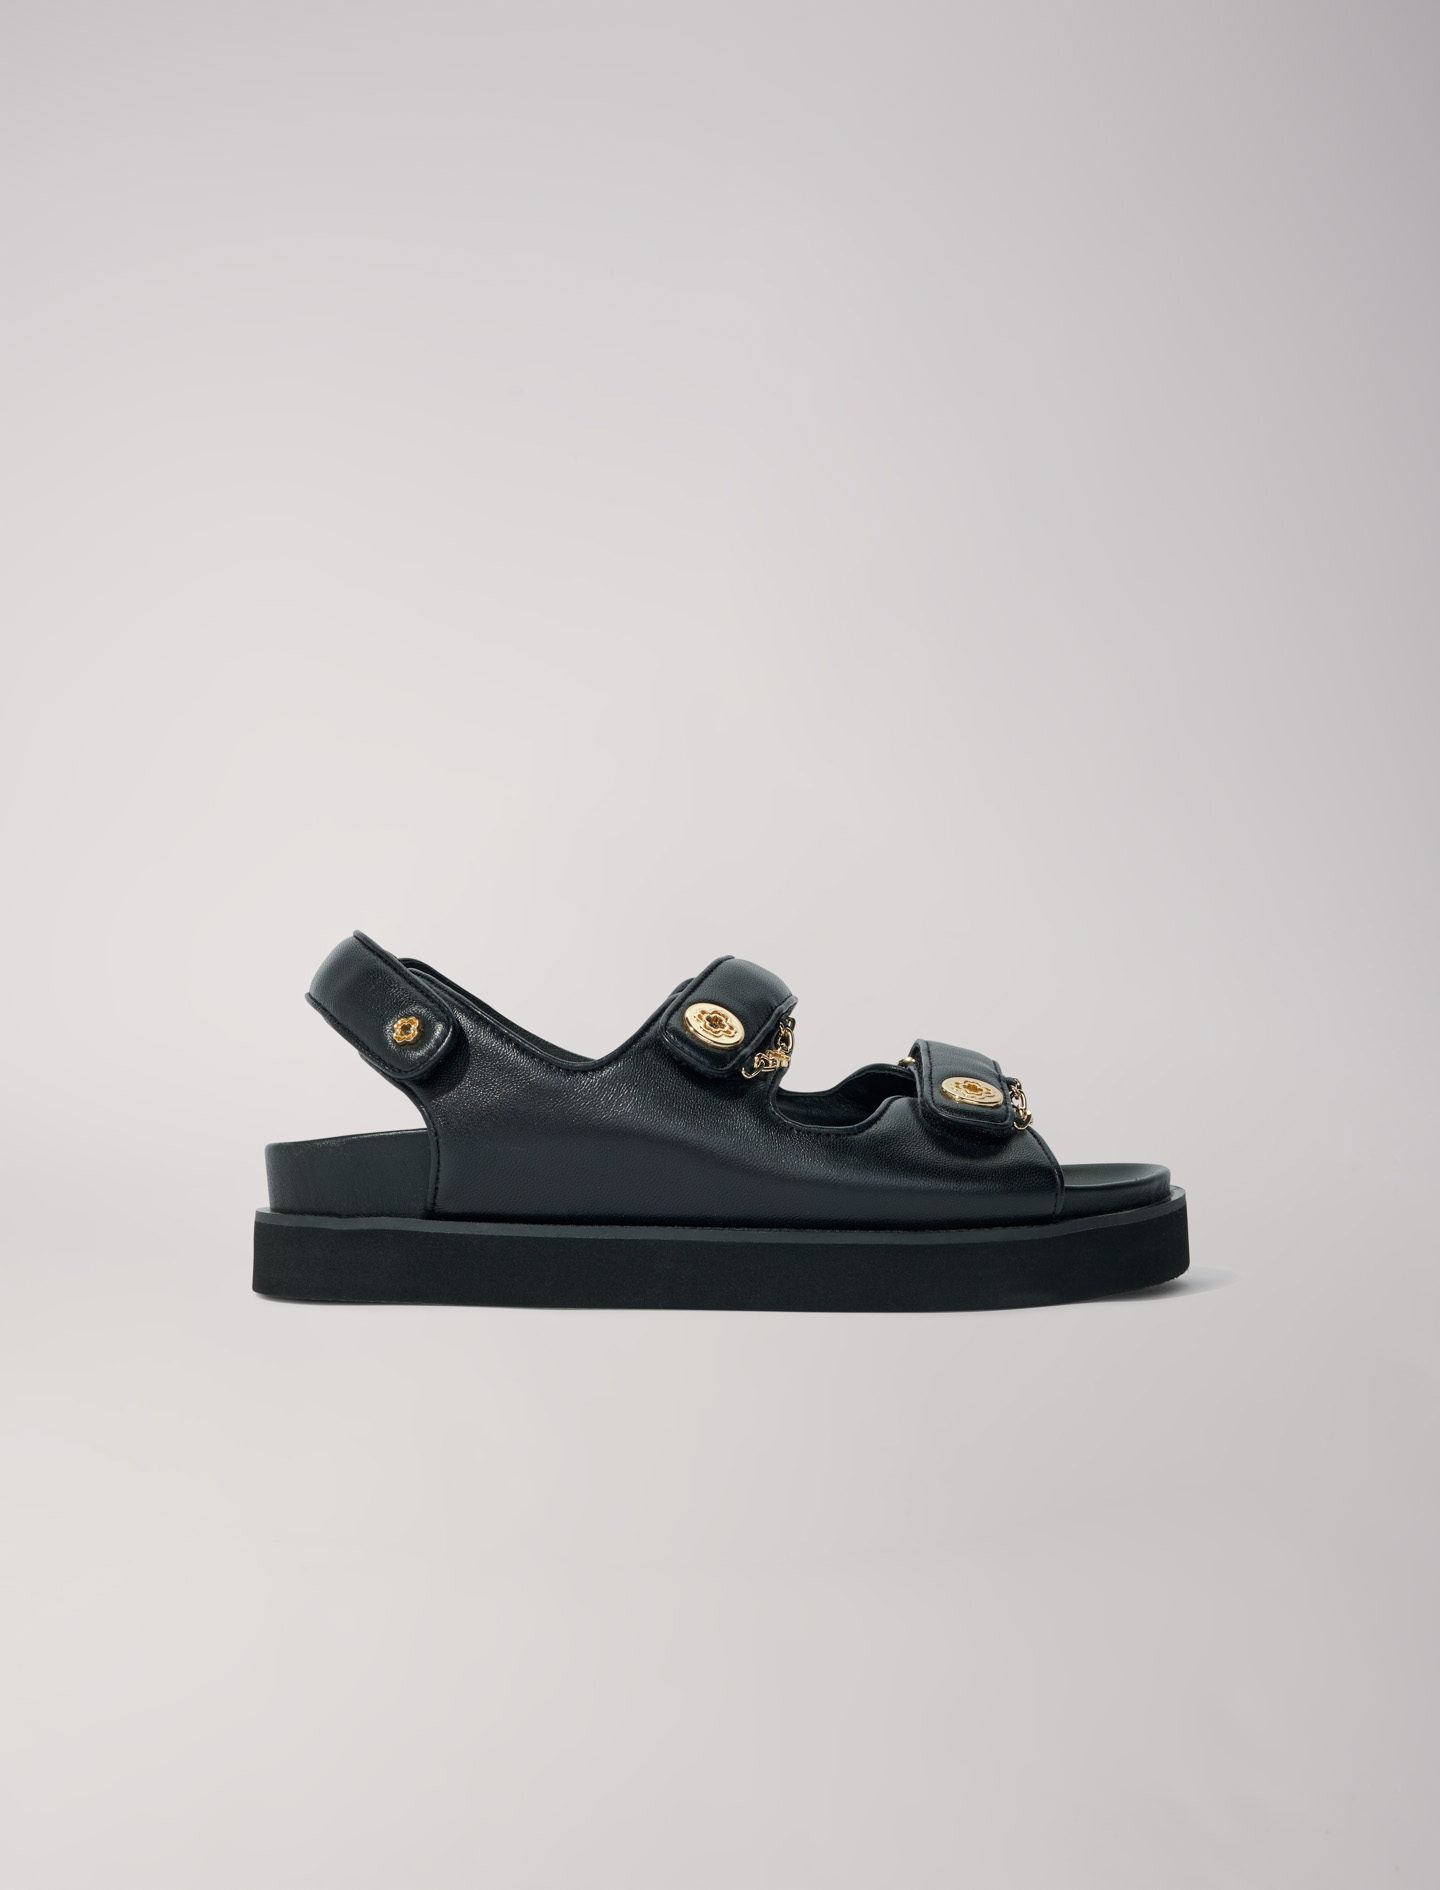 Maje Woman's ethylene vinyl acetate, Flat leather sandals for Spring/Summer, in color Black / Black